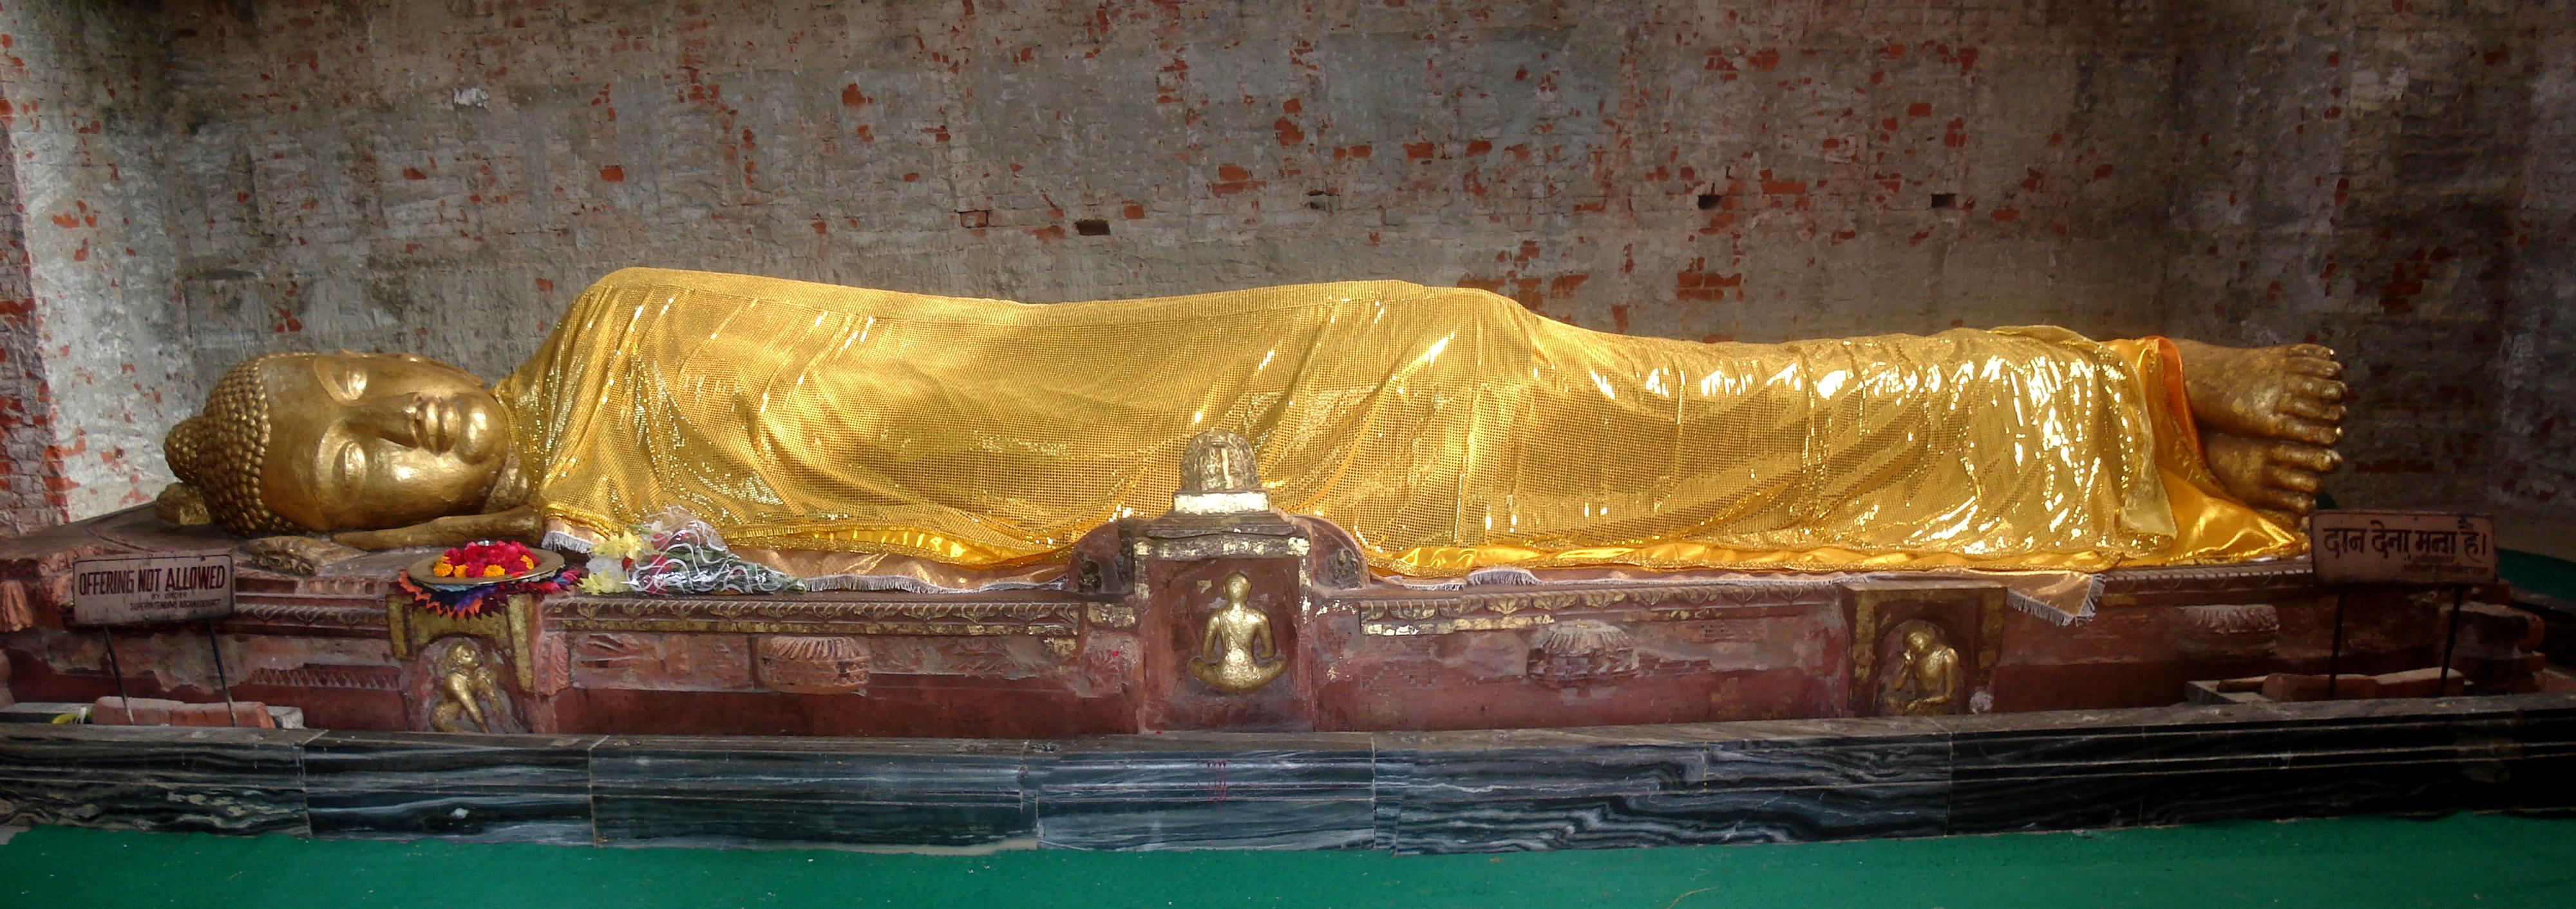 Tượng Phật Nhập Niết Bàn bên trong chùa Đại Bát Niết Bàn tại thành Câu Thi Na | The Lying Statue of the Buddha inside the Kusinagara Stupa